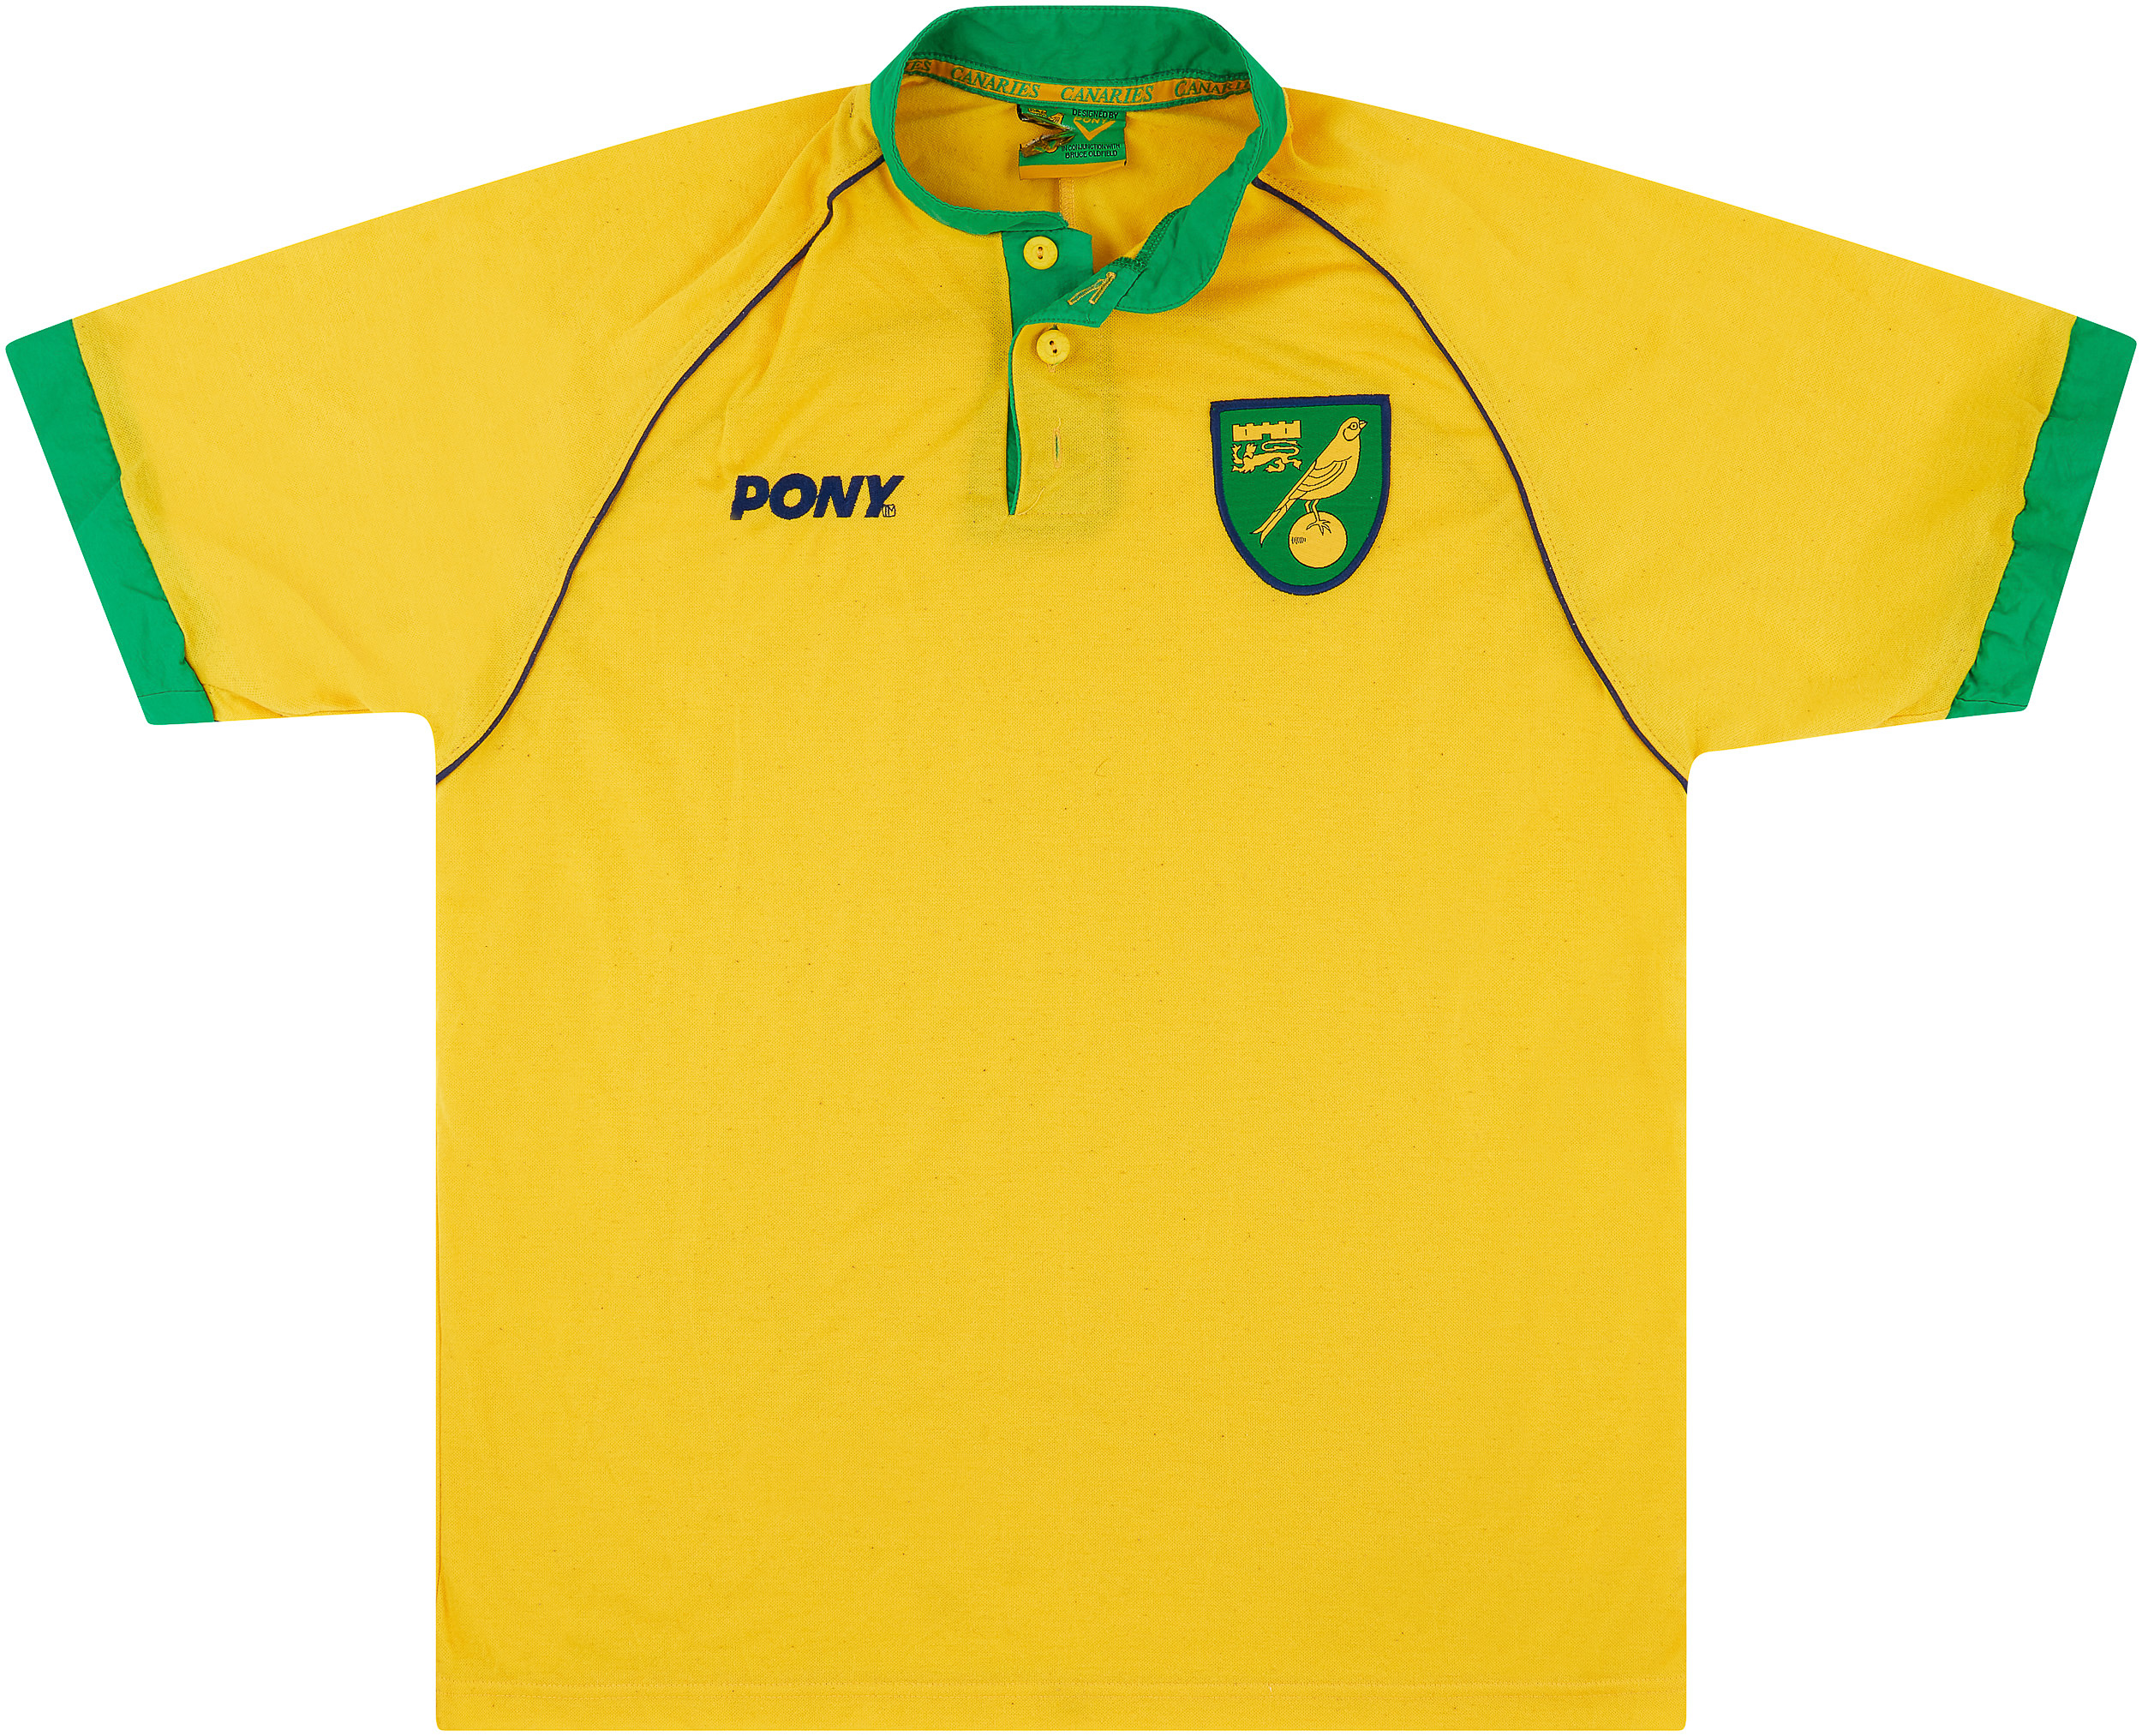 Norwich City  home shirt (Original)